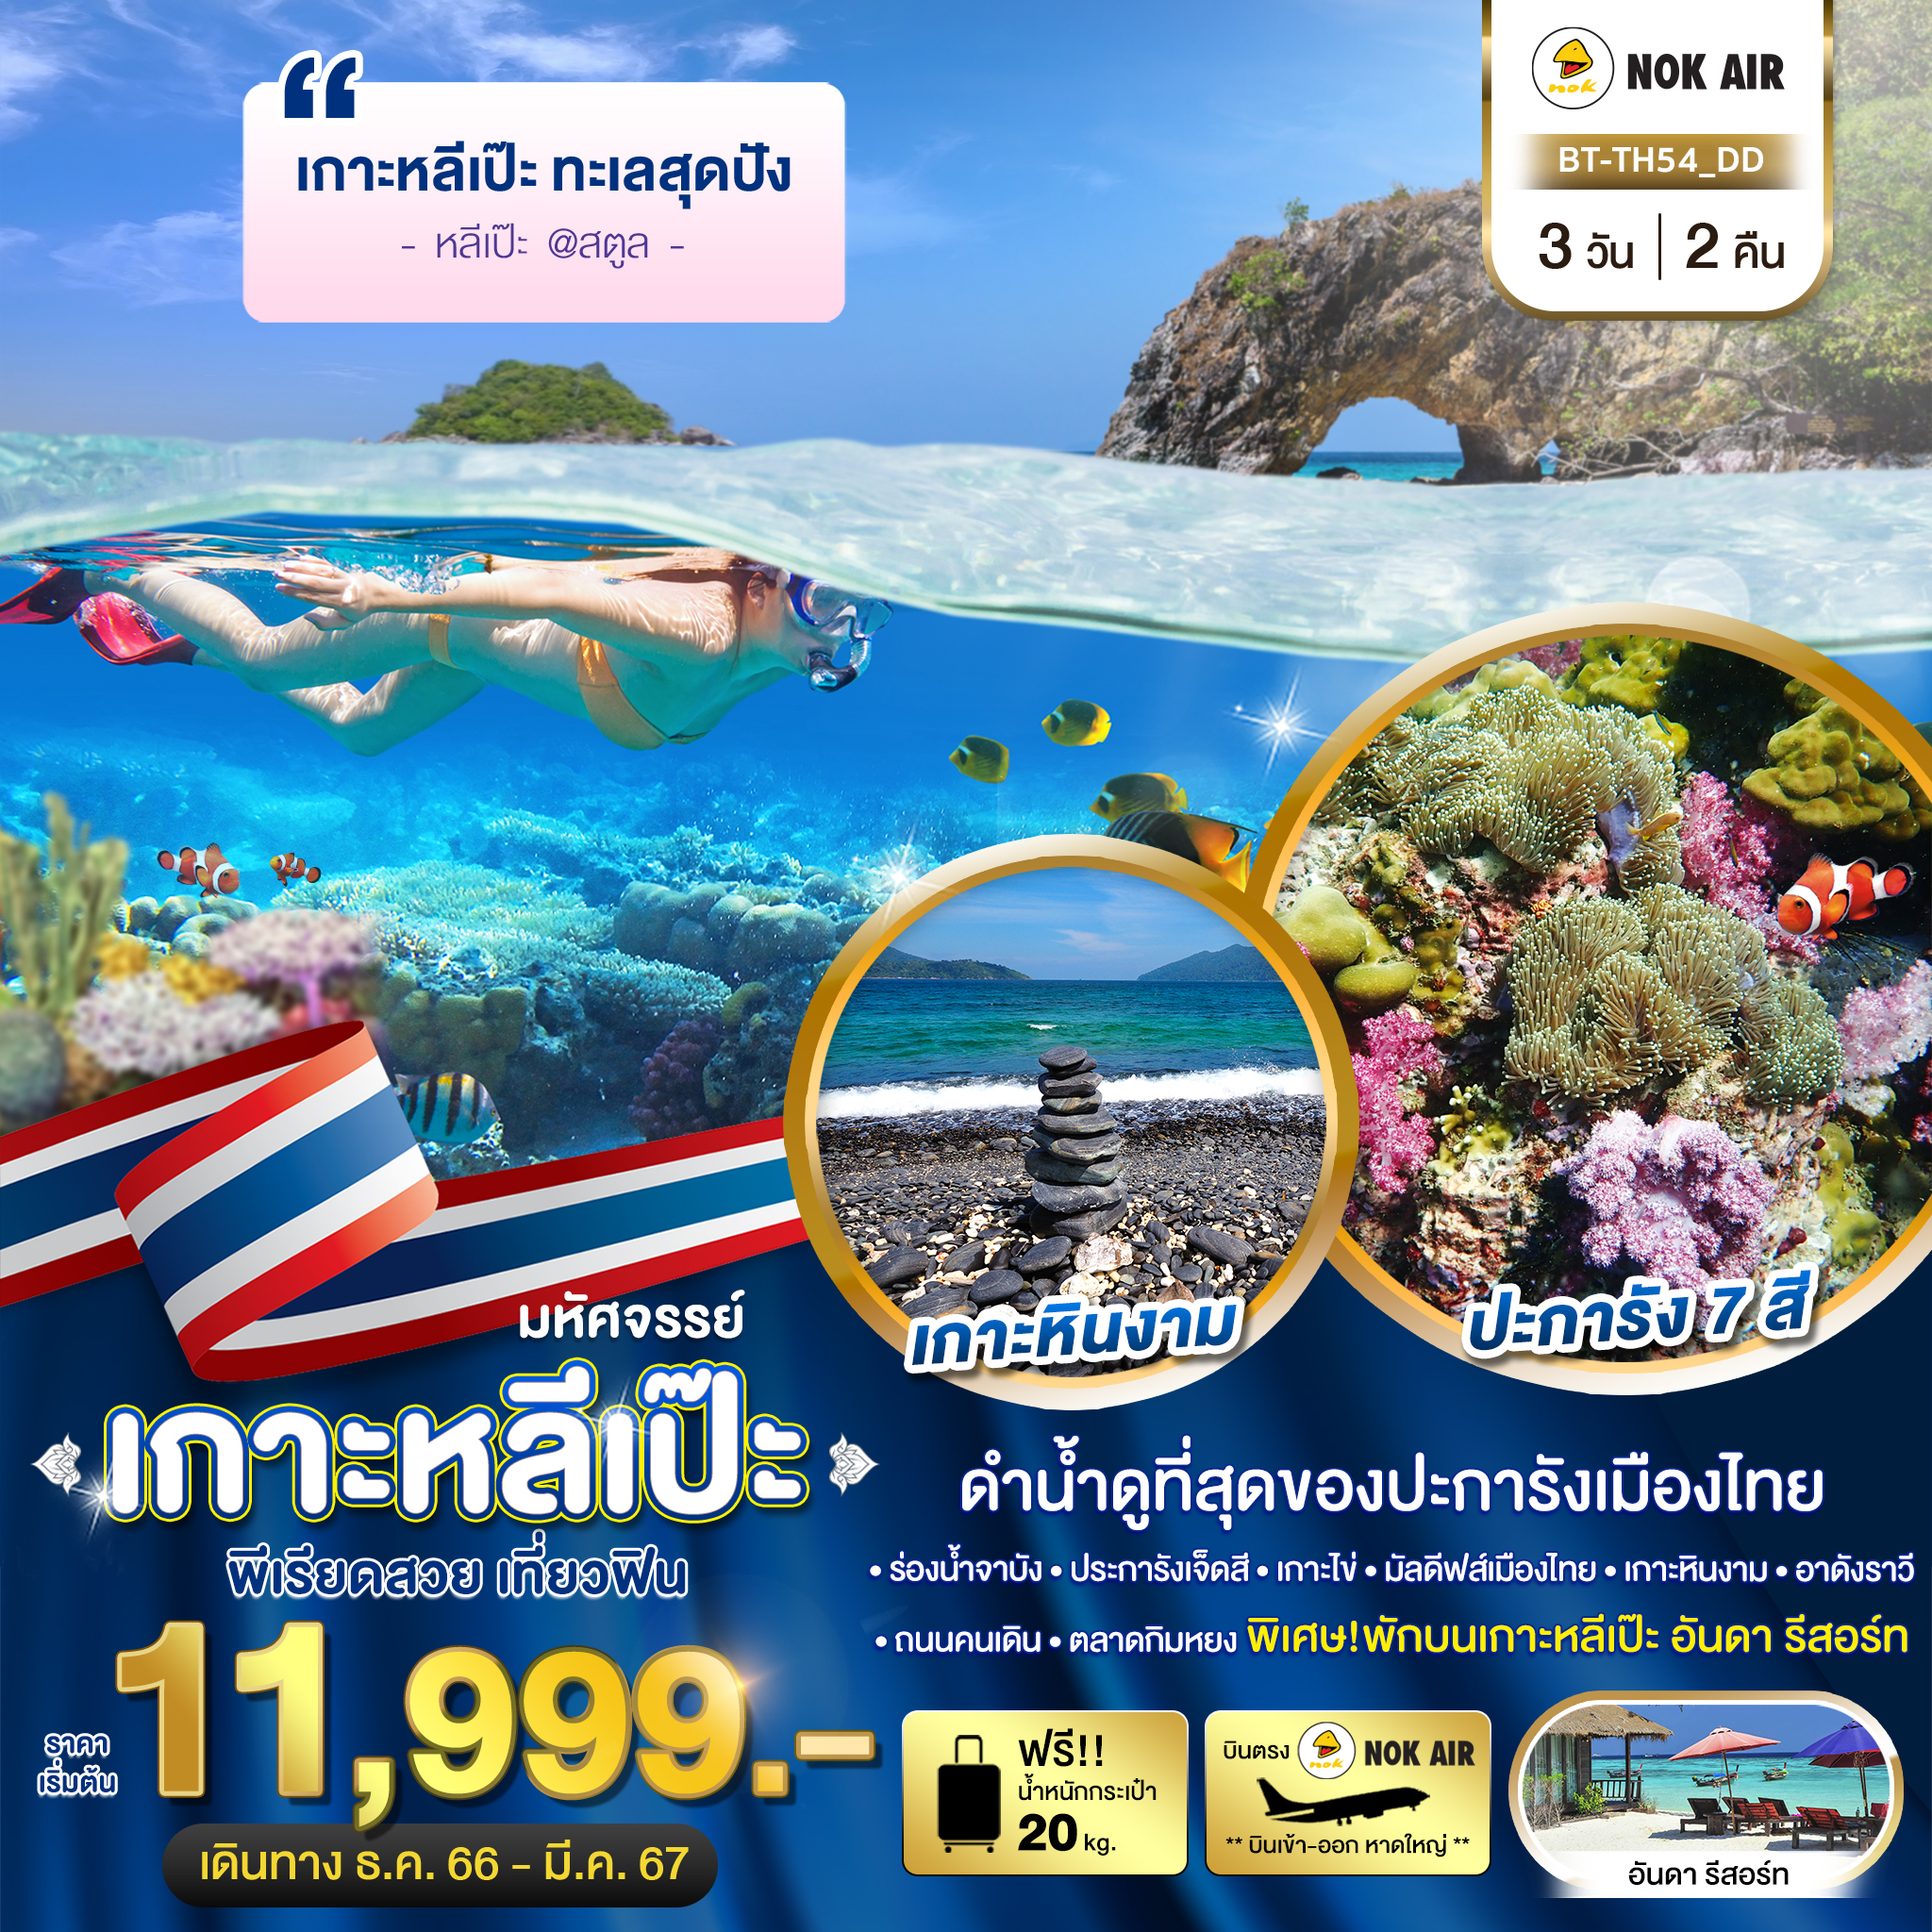 มหัศจรรย์..เกาะหลีเป๊ะ ทะเลสุดปัง ดำน้ำดูที่สุดของประการังเมืองไทย 3 วัน 2 คืน